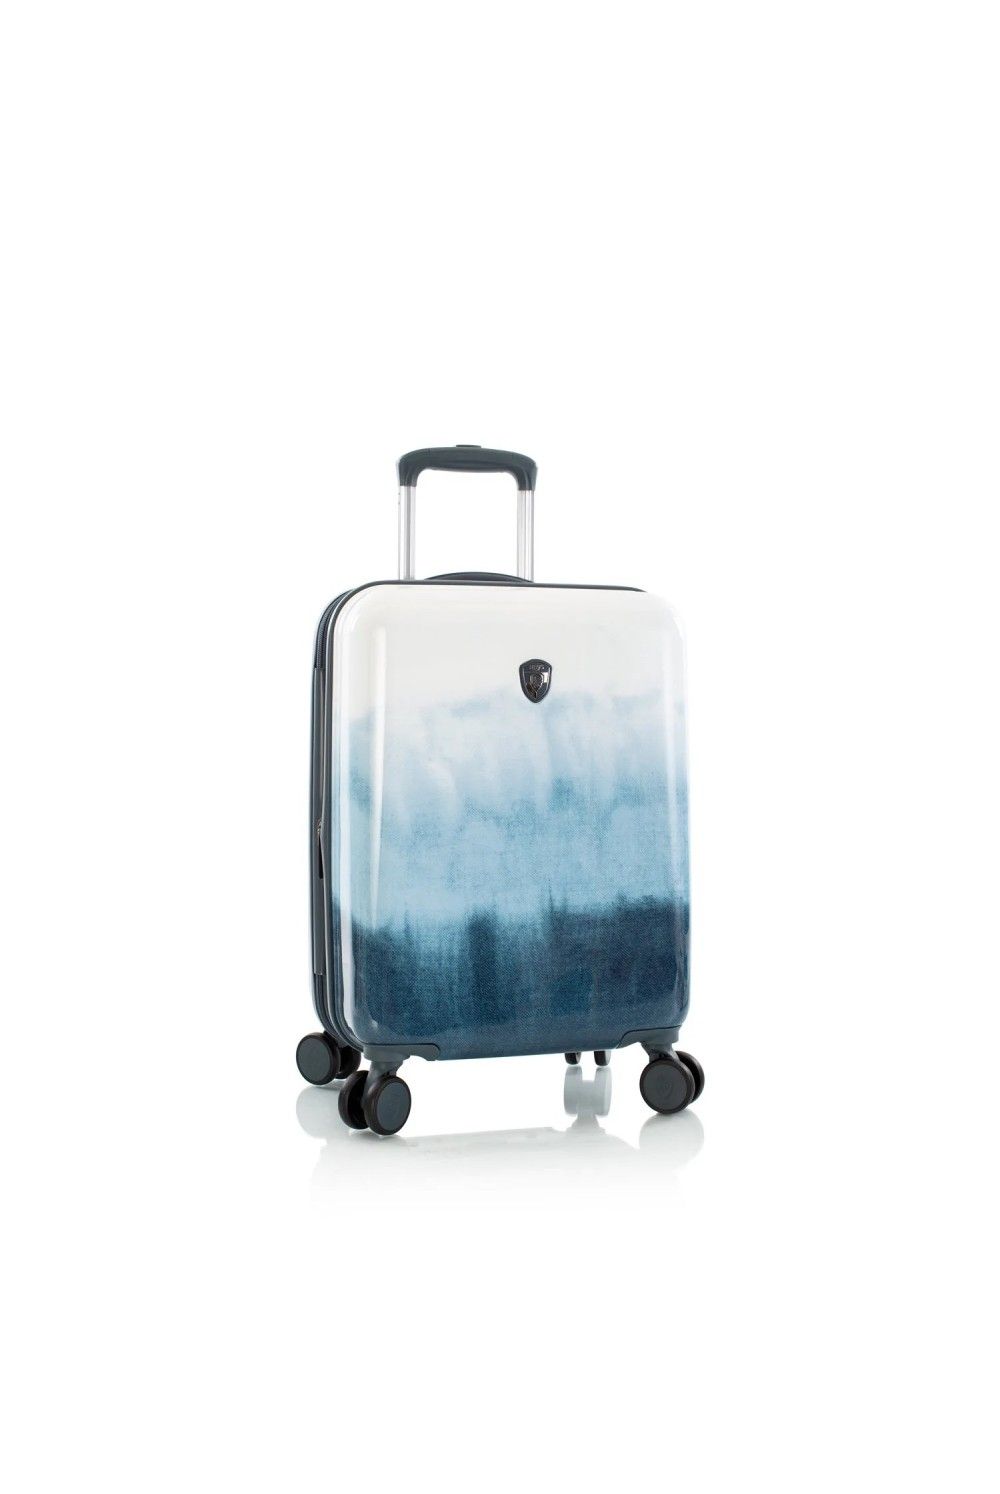 Koffer Handgepäck Heys Blue Fashion 4 Rad 55cm erweiterbar